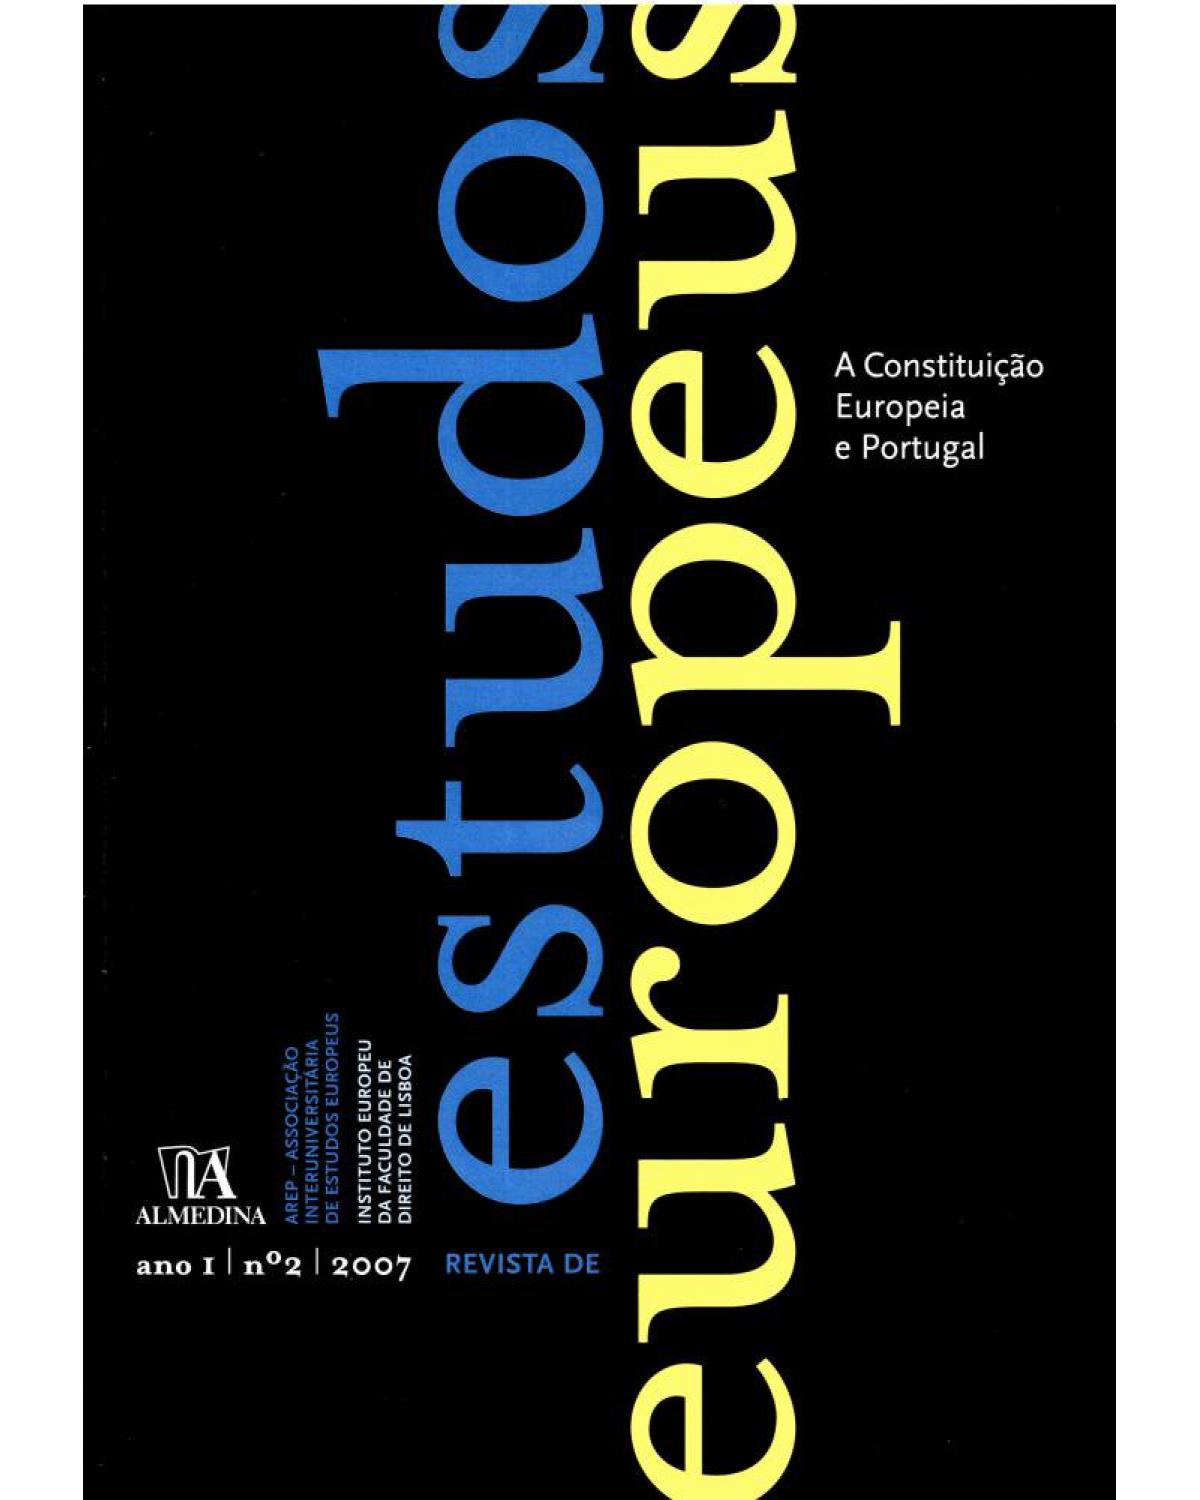 Revista de estudos europeus - ano I - Nº 2 - 1ª Edição | 2007